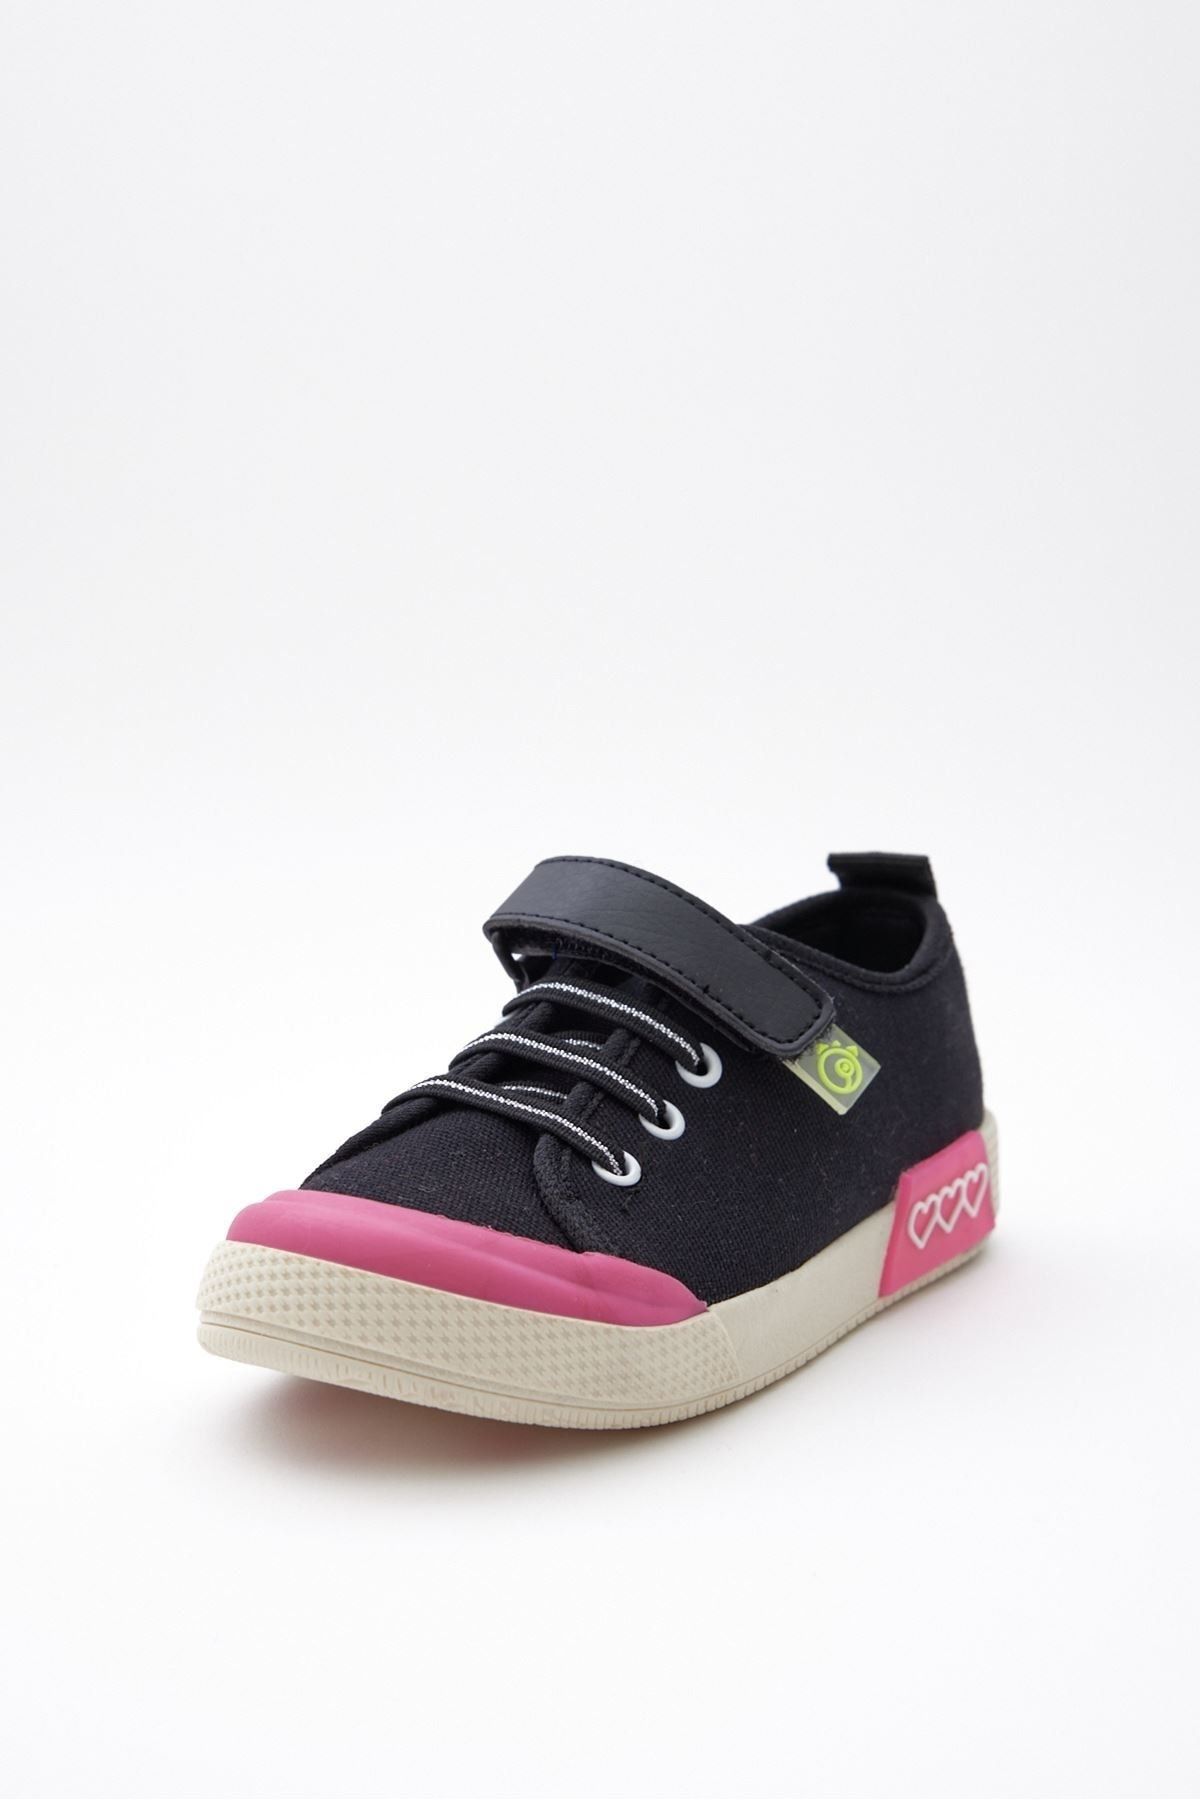 Dudino Kız Çocuk Loki Spor Ayakkabısı Black/pink 2c82c326